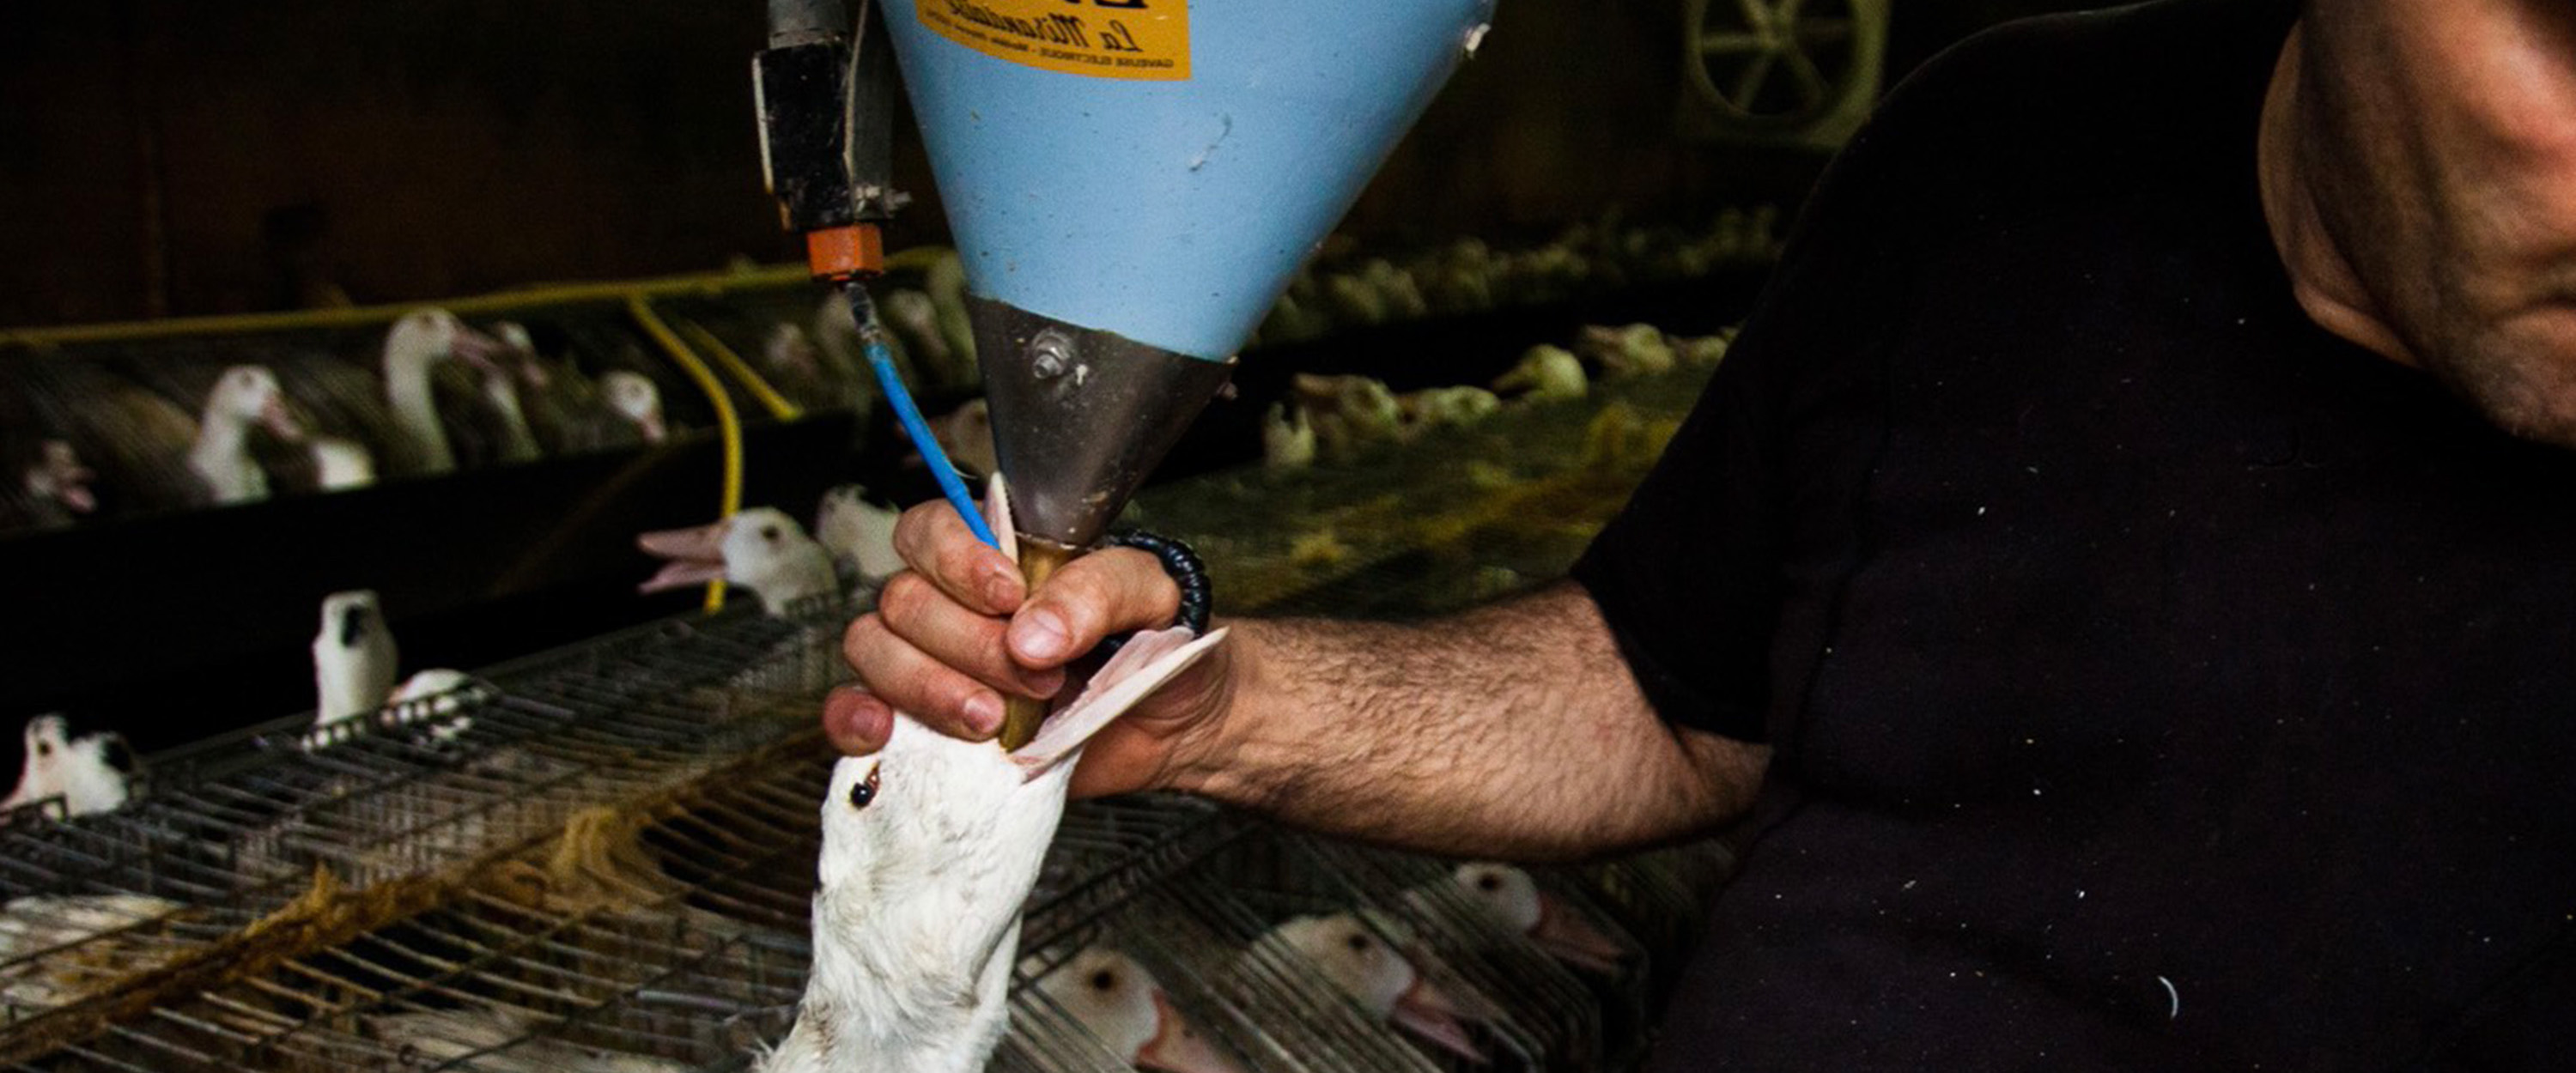 Pato en granja de foie gras es alimentado a la fuerza